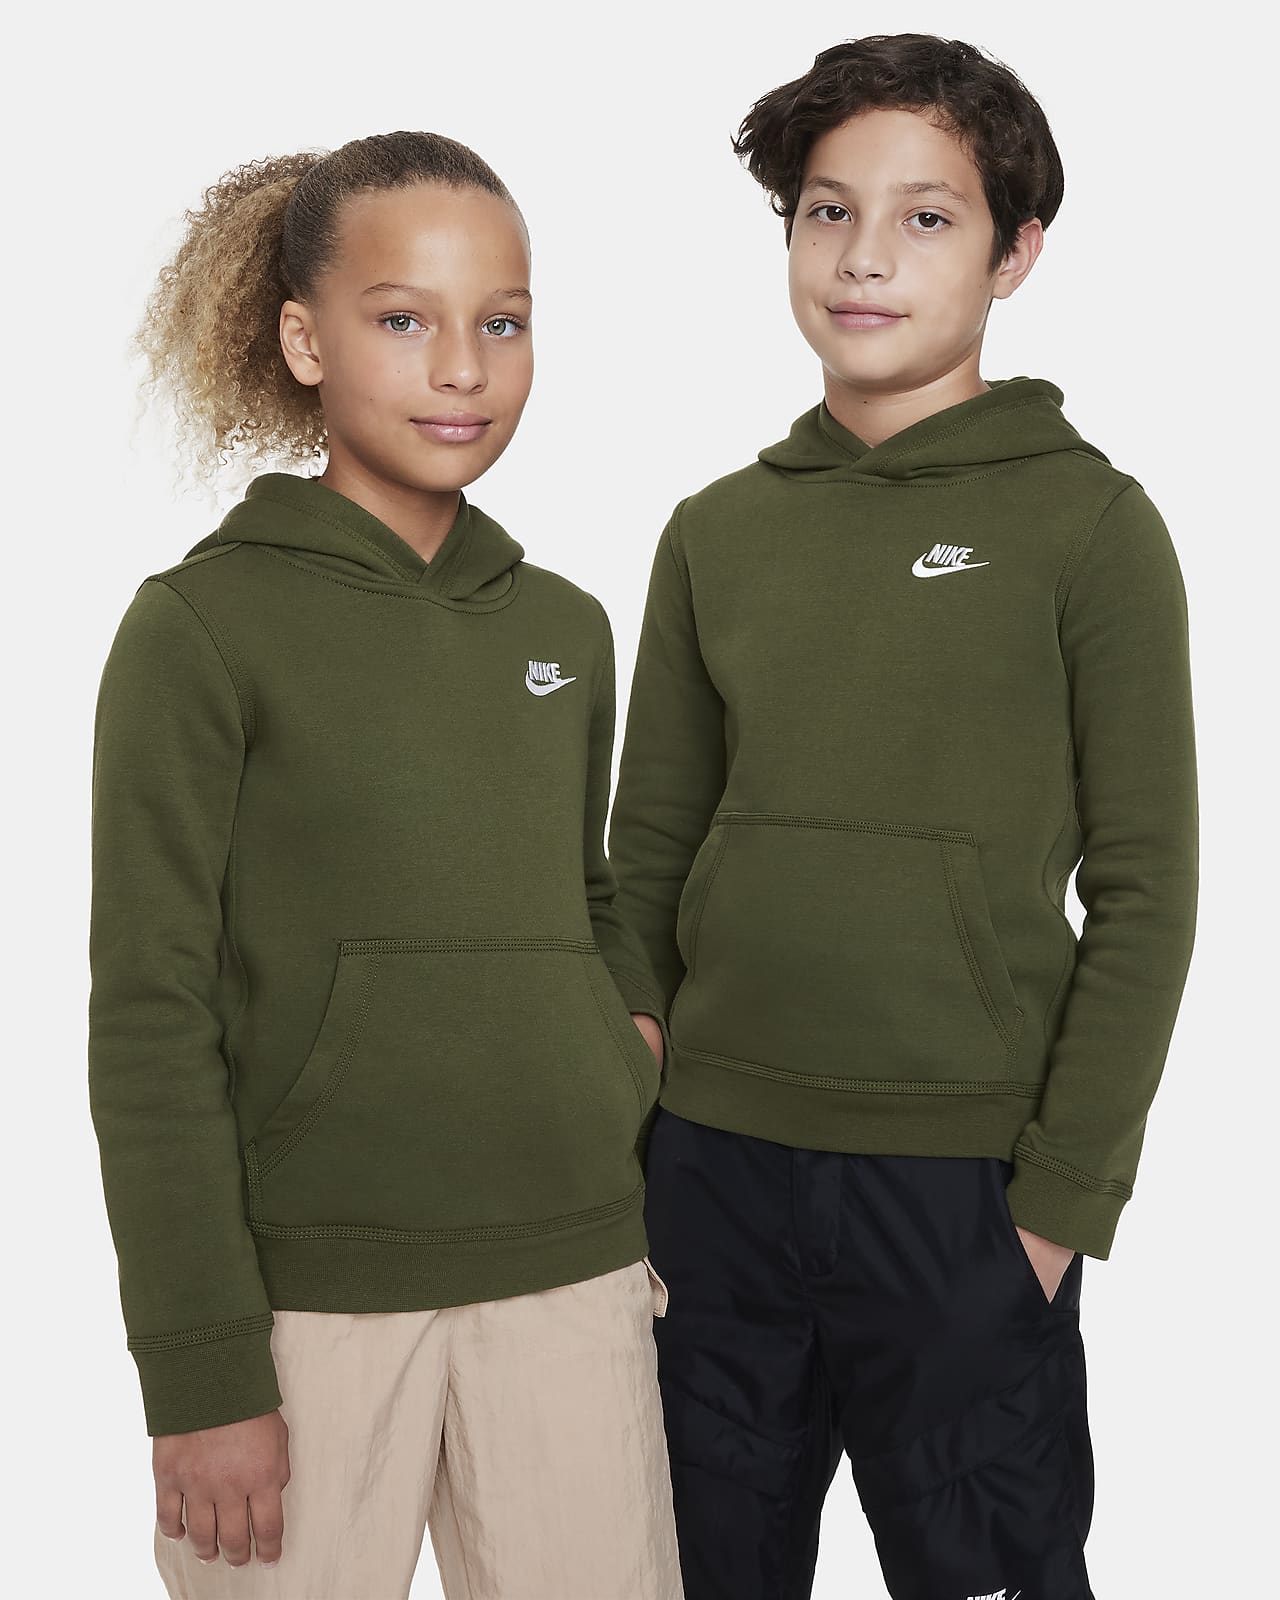 Pullover Nike Sportswear für Club Kinder. ältere Nike DE